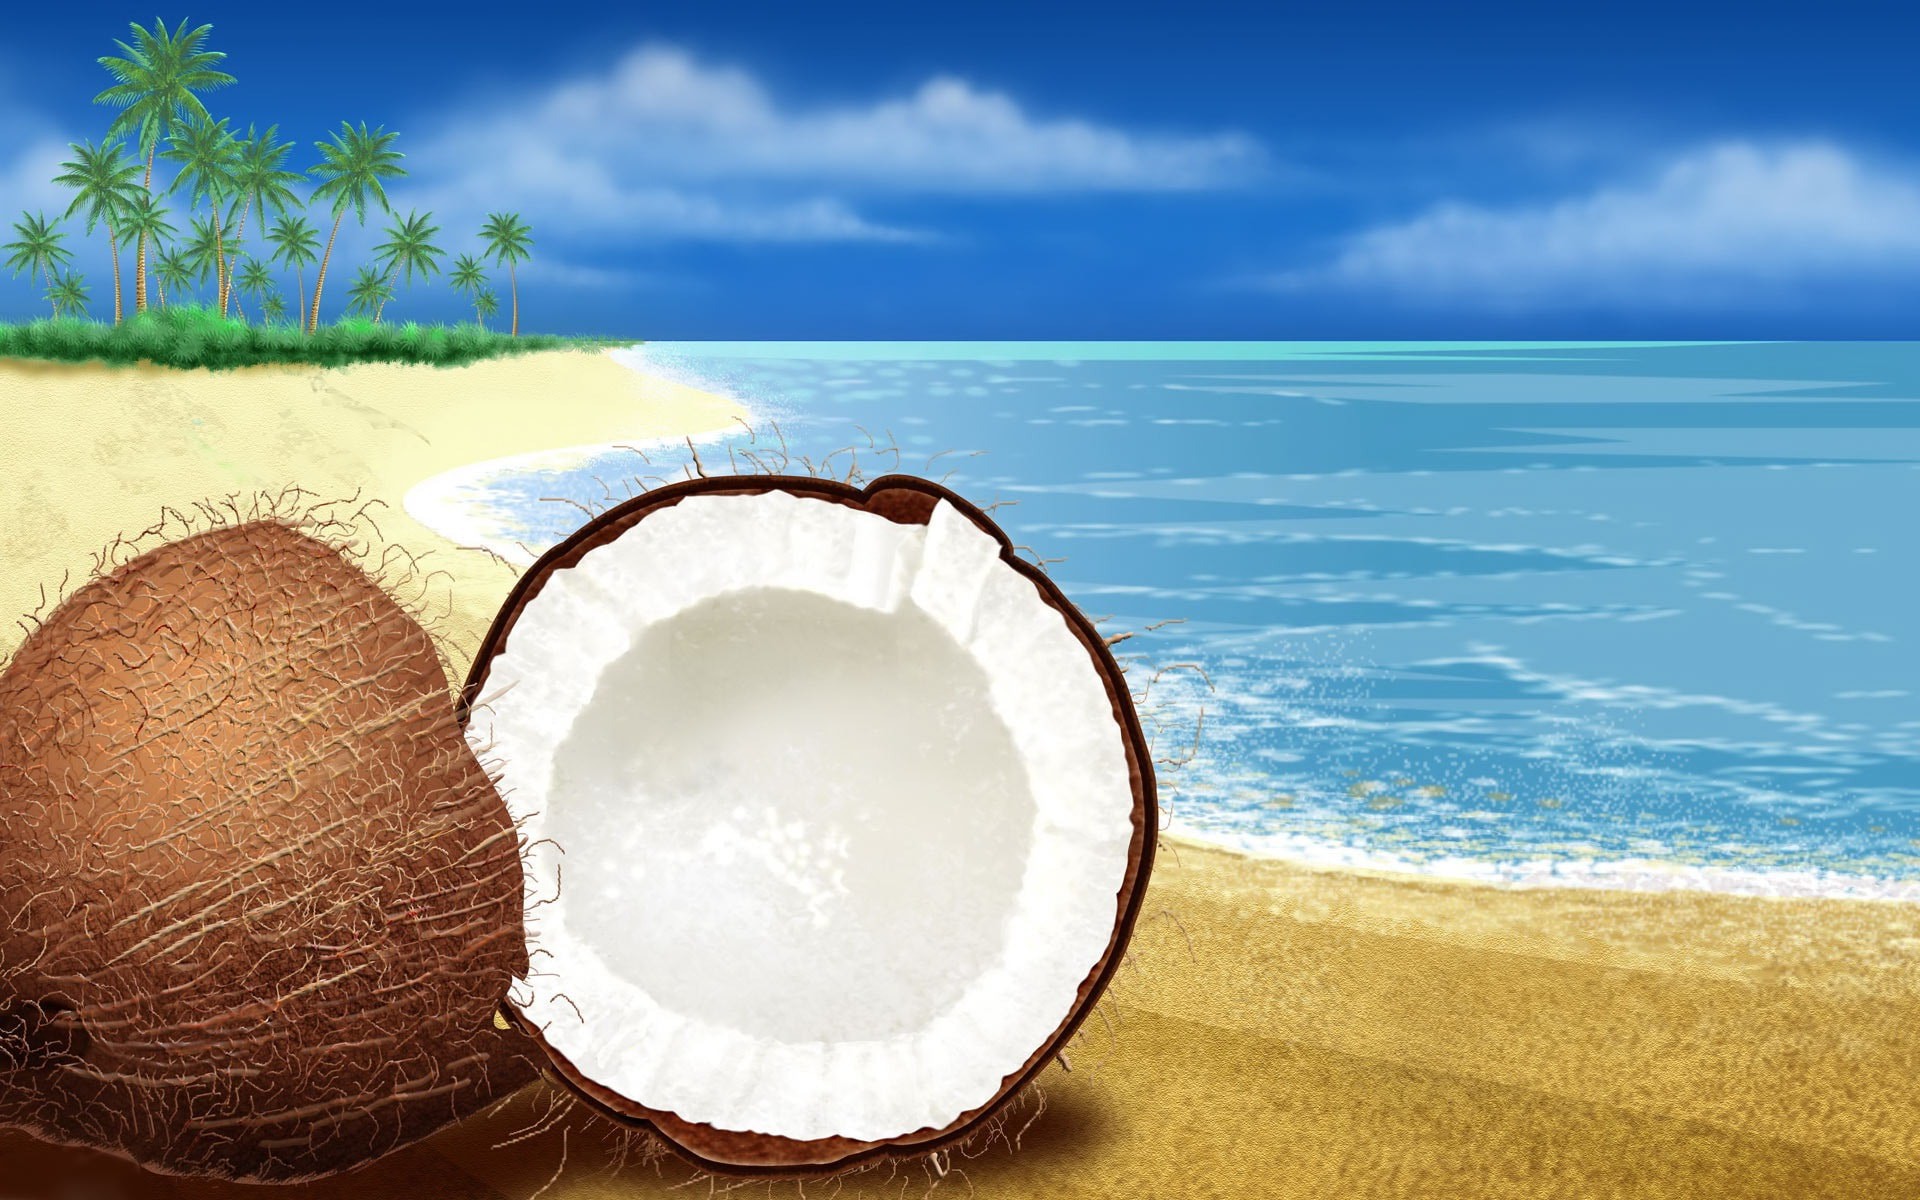 코코넛 벽지,하늘,여름,바다,경치,휴가